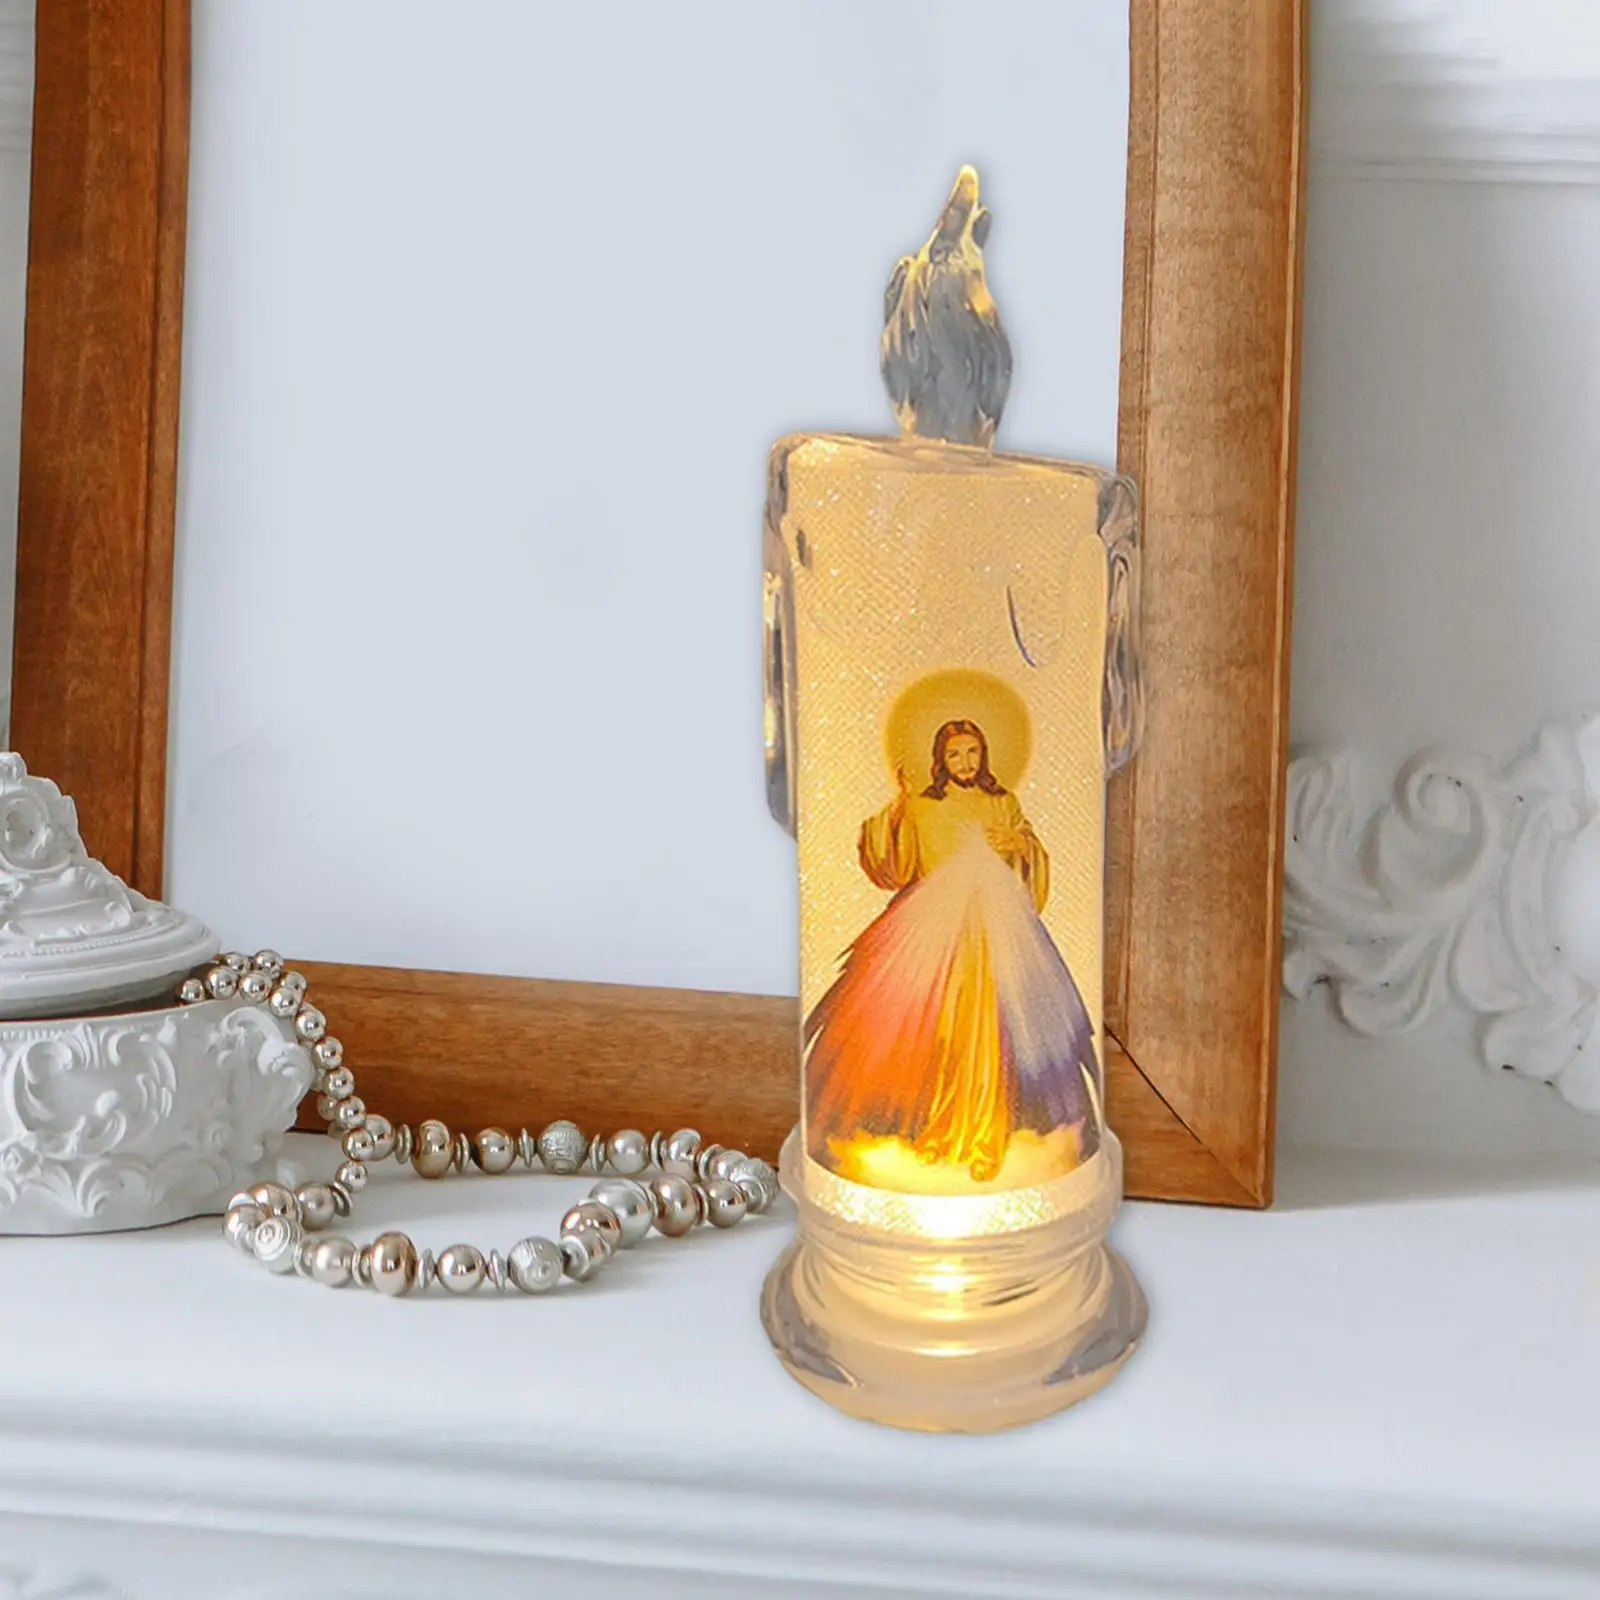 Elektronik LED lamba süsleme dini sanat dekor masa tatil için 4